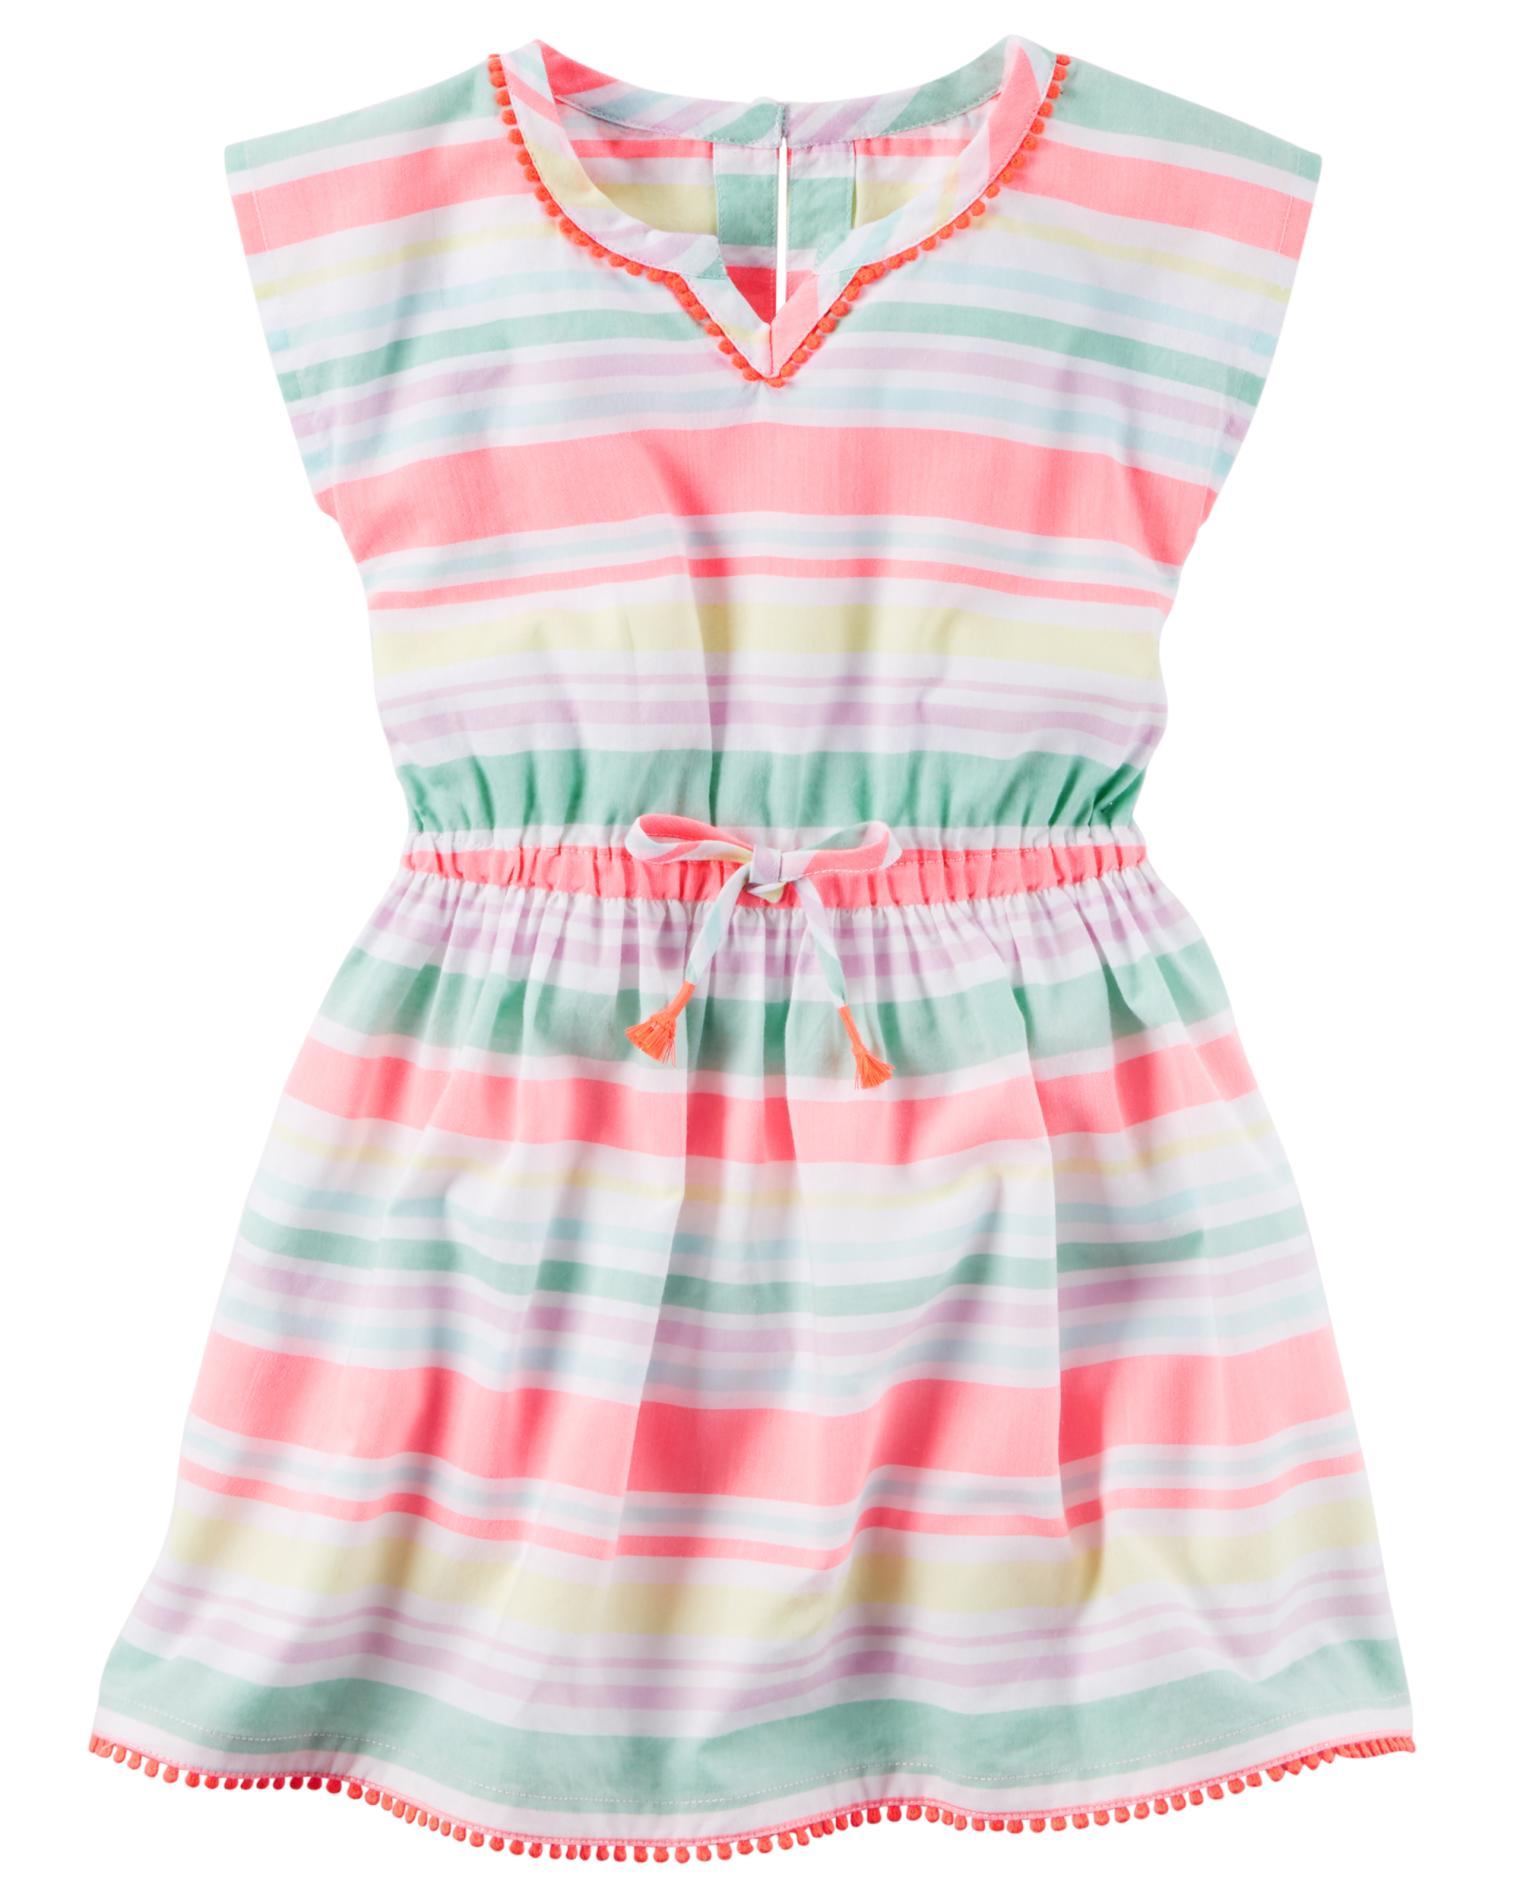 Carter's Girls' Short-Sleeve Dress - Striped